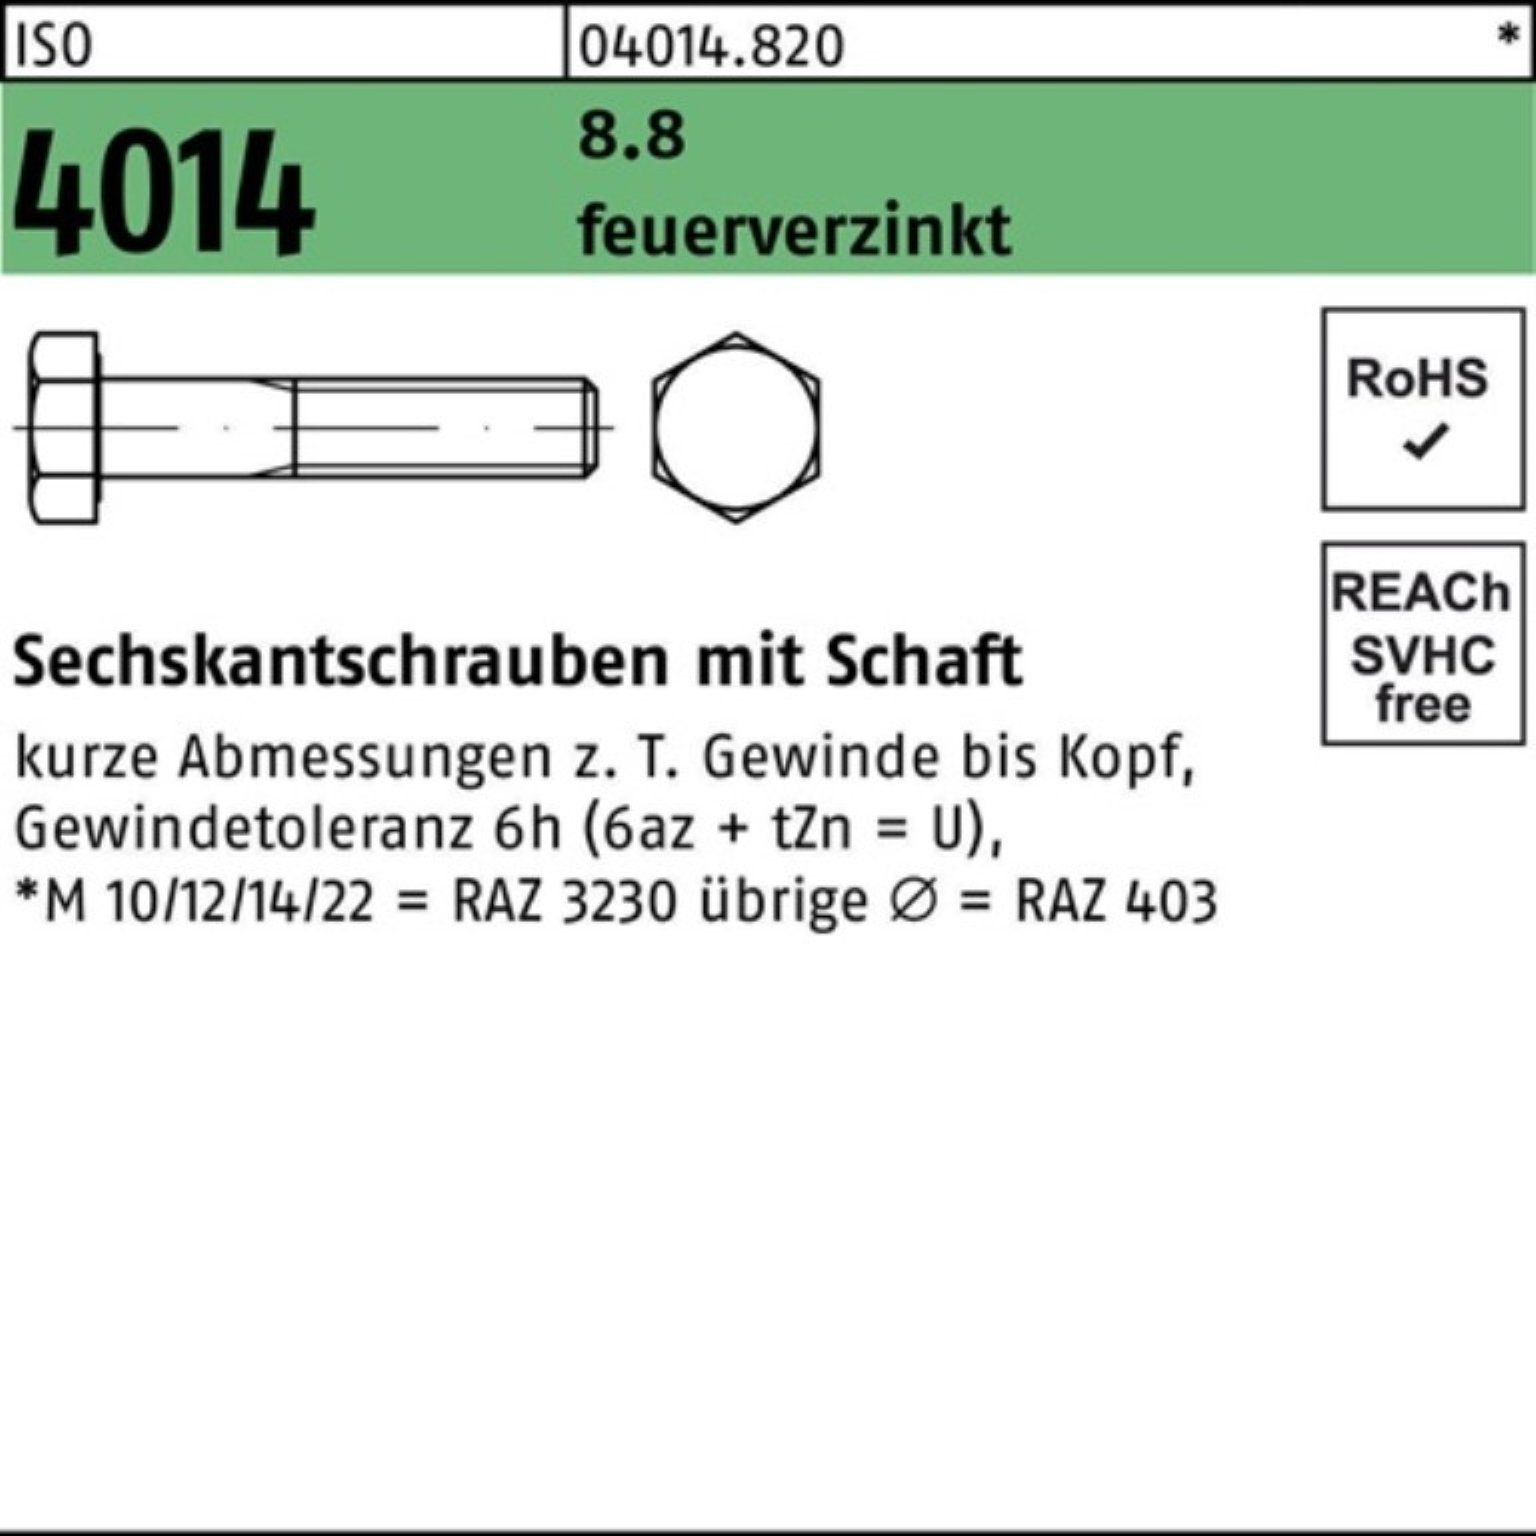 Bufab Sechskantschraube 100er Pack Sechskantschraube ISO 4014 Schaft M12x 160 8.8 feuerverz. 2